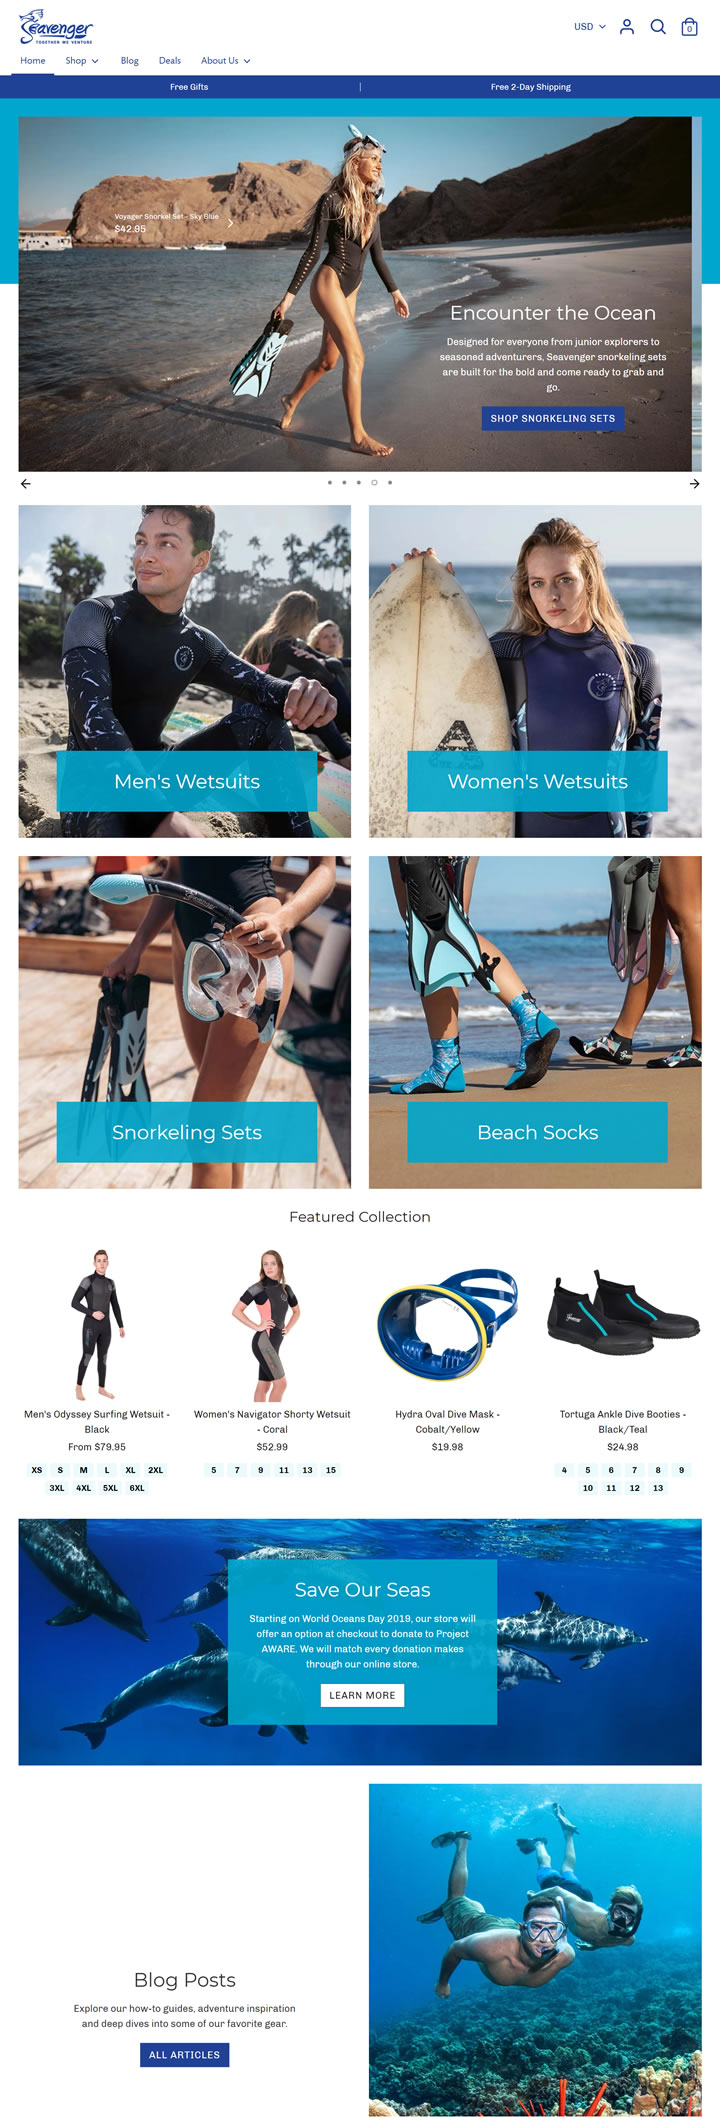 Seavenger官網：潛水服、浮潛、靴子和襪子 美國購物網站 MeetKK-MeetKK